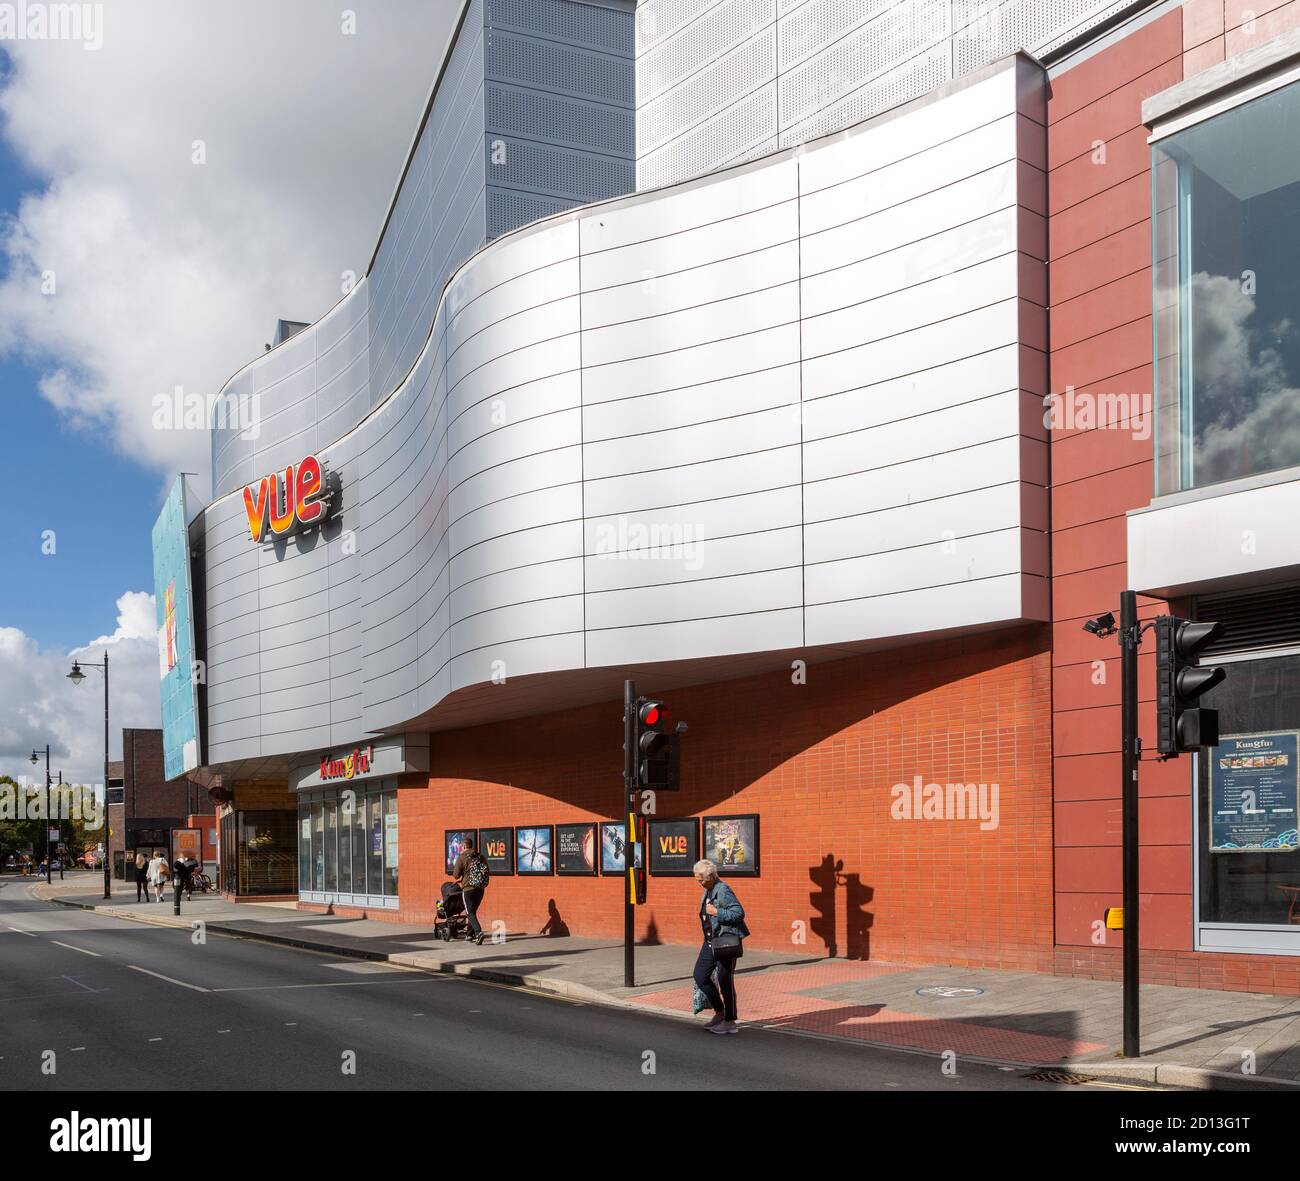 Vue International cinema building nel centro città, Newbury, Berkshire, Inghilterra, Regno Unito Foto Stock